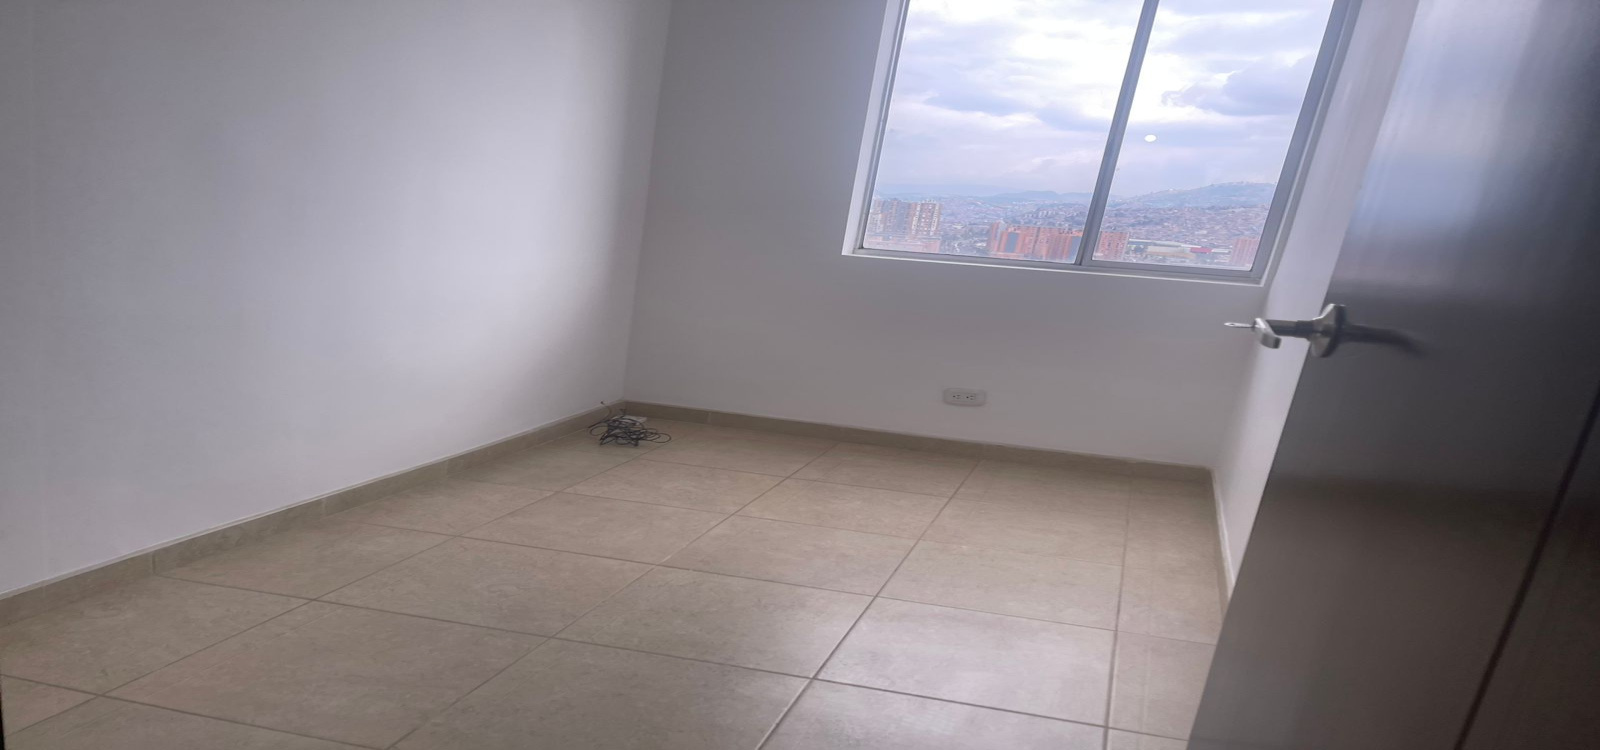 68-08 60 A Sur, Bogotá, Sur, Madelena, 3 Habitaciones Habitaciones,2 BathroomsBathrooms,Apartamentos,Arriendo,Madelena Urbano,60 A Sur,4664